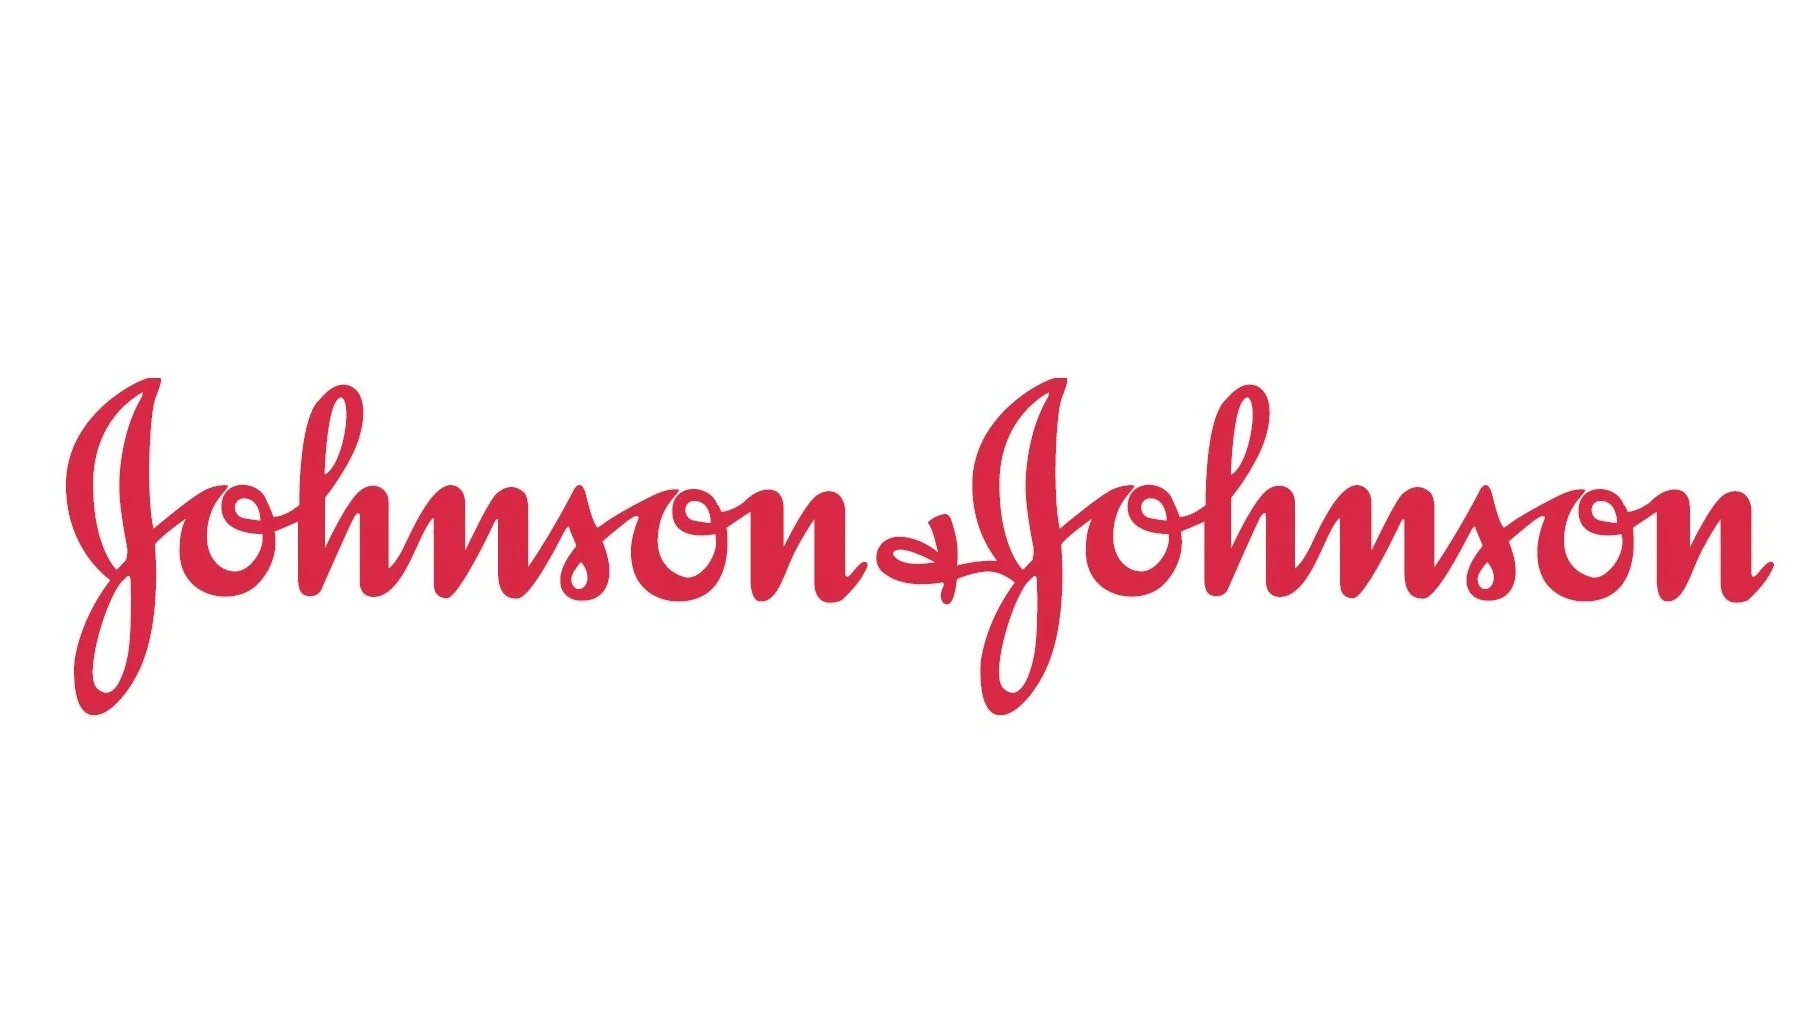 rome business school partner johnson&johnson logo